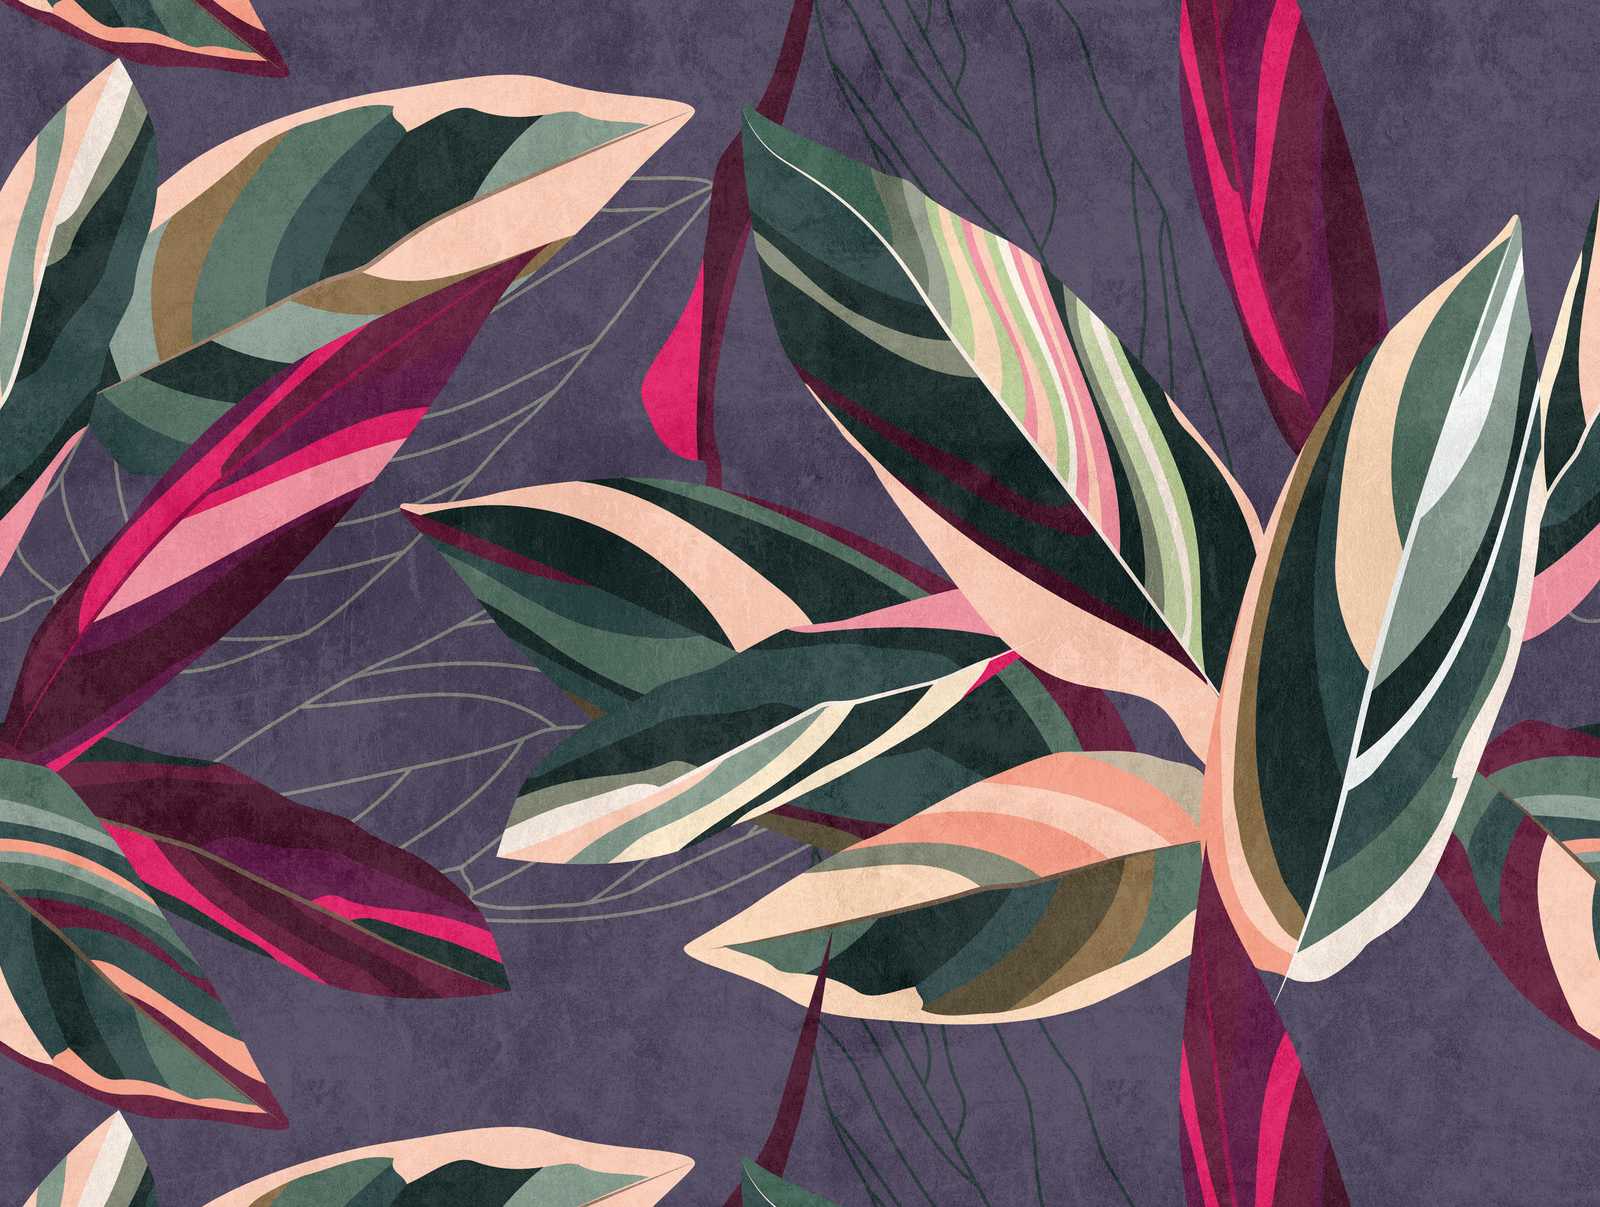             Tapeten-Neuheit – Motivtapete Blätter-Design im Colour Block Stil
        